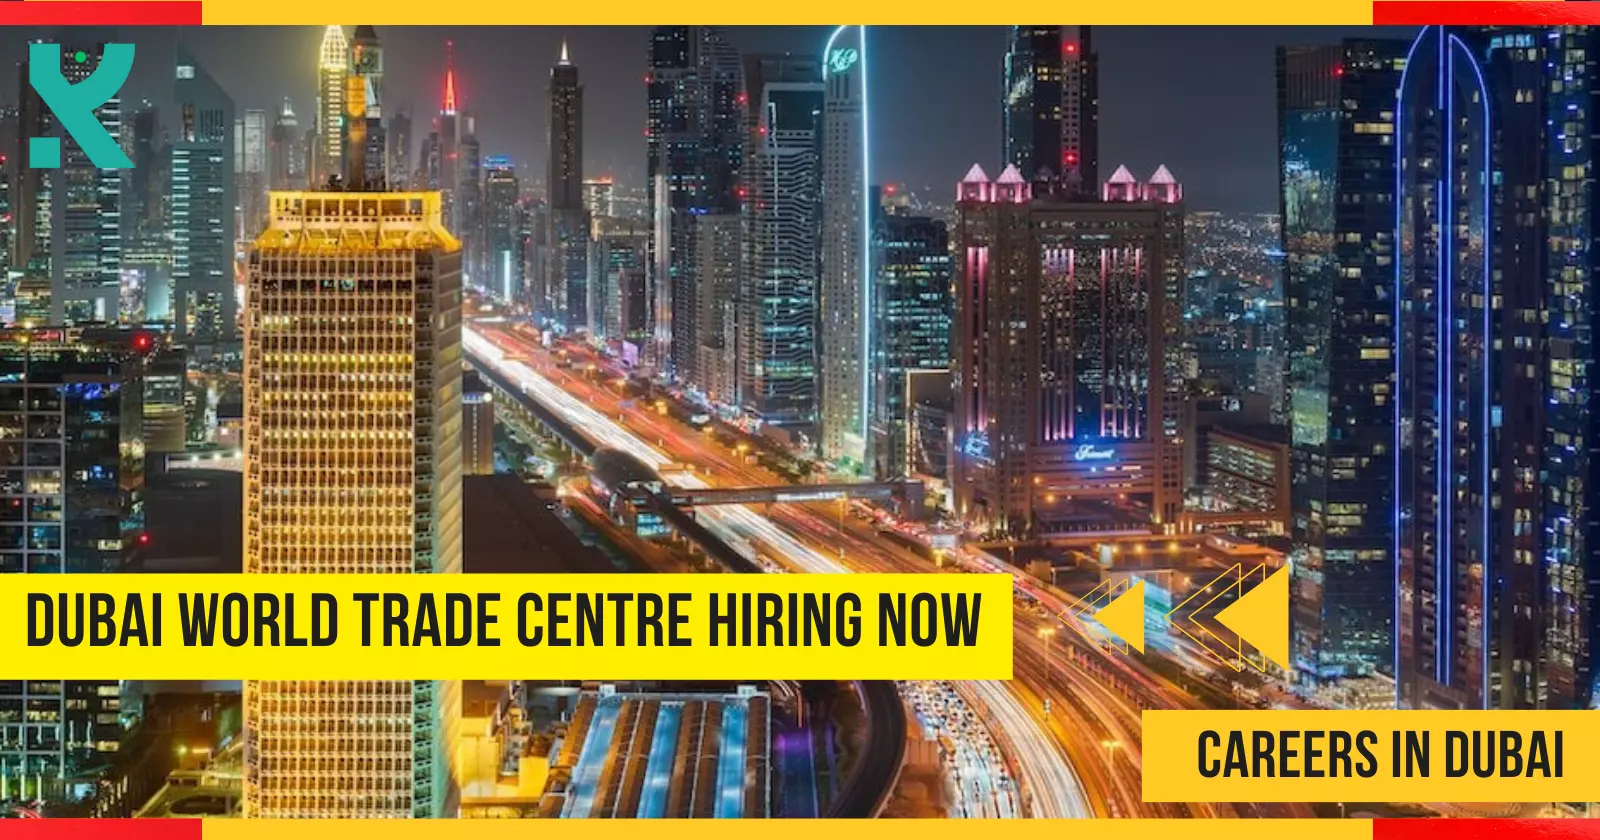 Dubai World Trade Centre Hiring Now